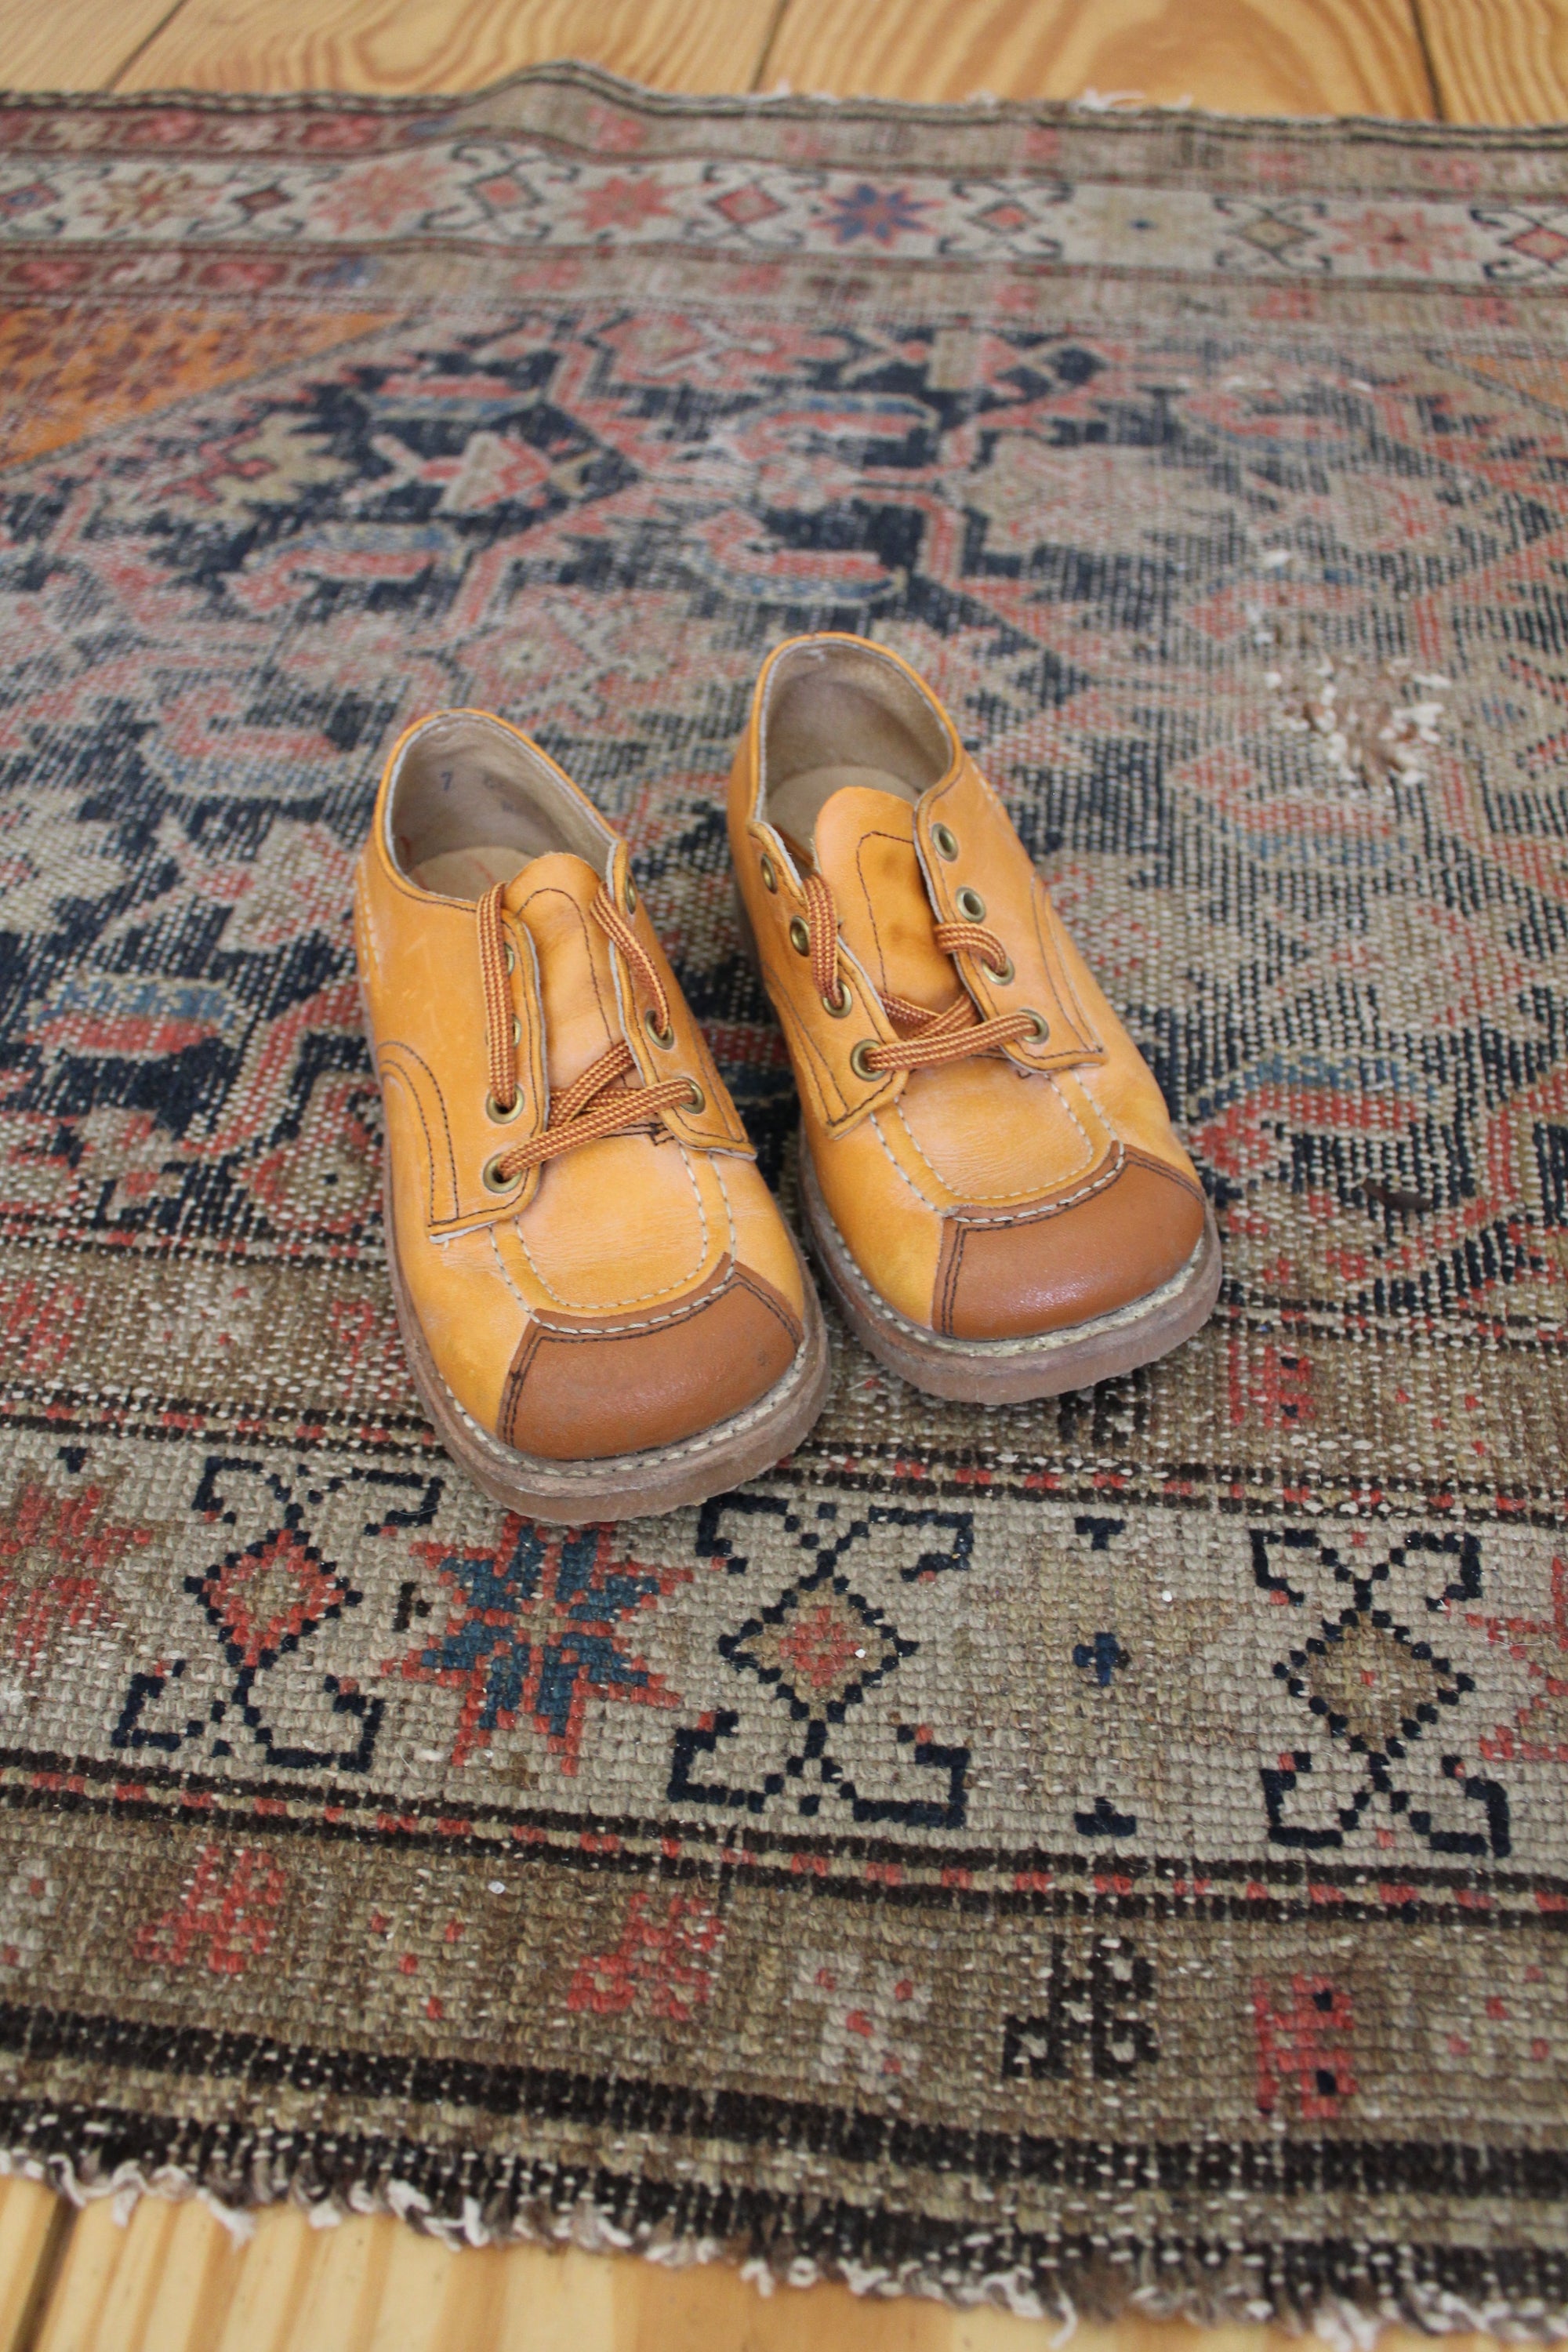 Vintage Pair of Children's Shoes: Size 7.5 - Diamonds & Rust 